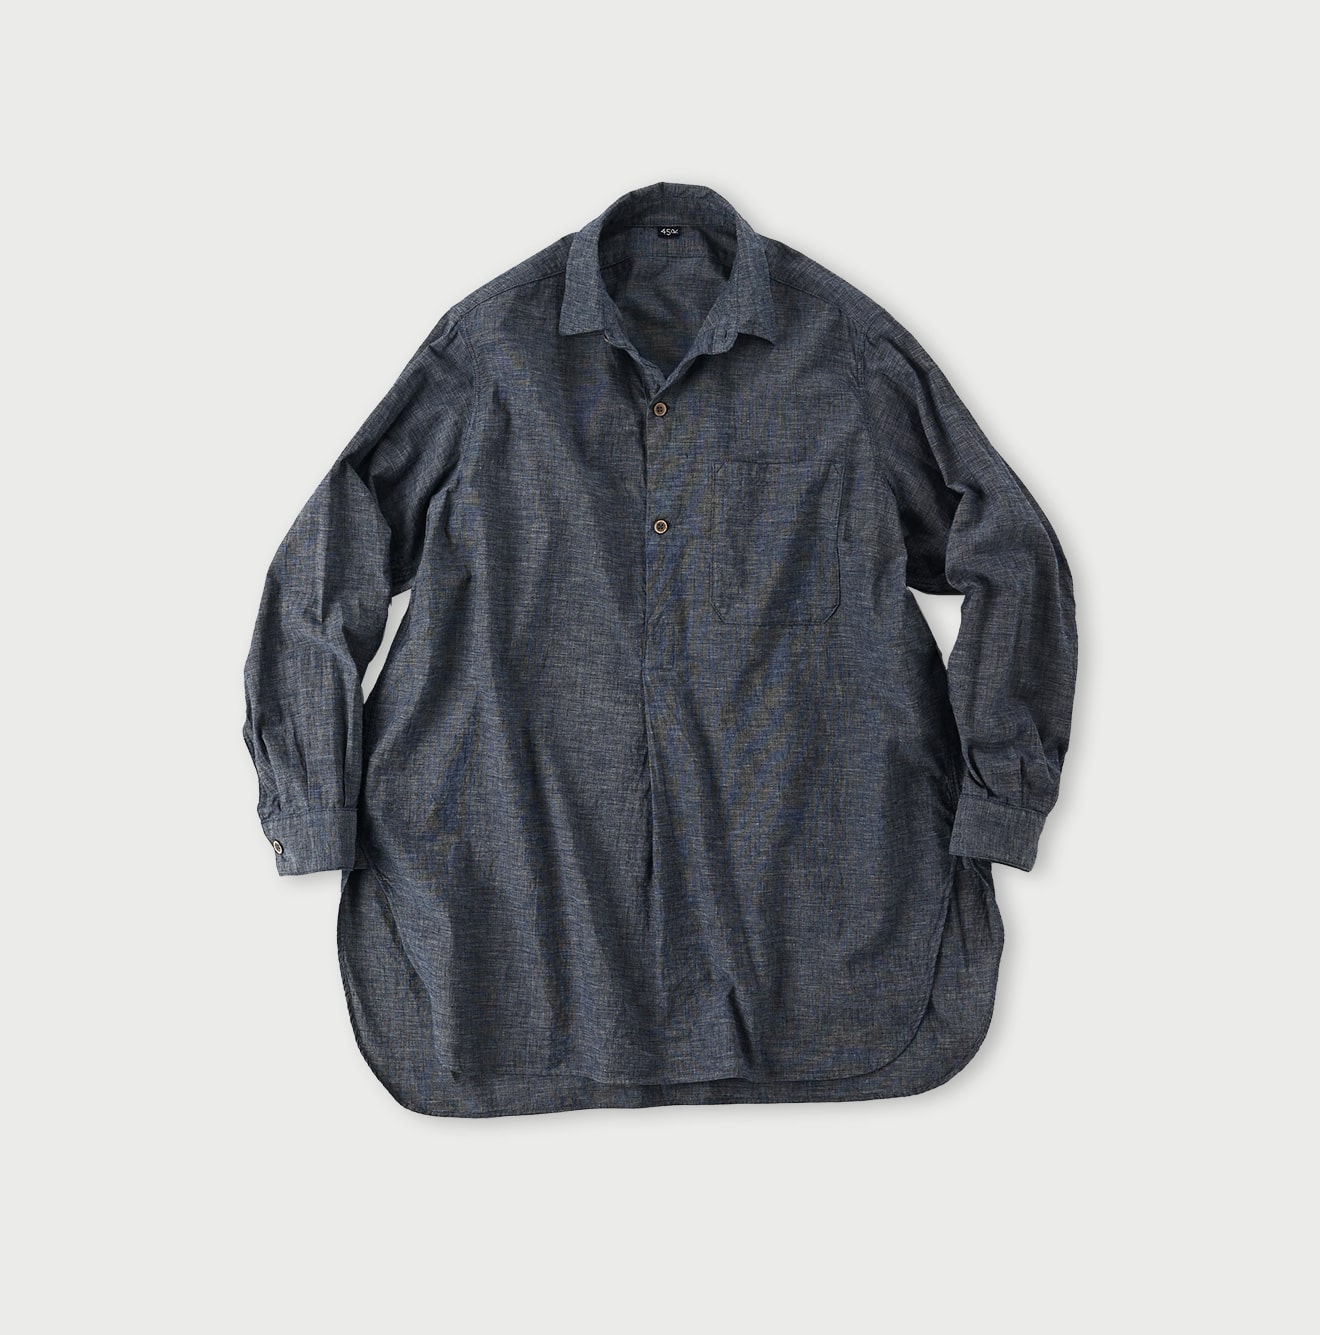 Indigo Hakeme 908 Grandpa Pullover Shirt